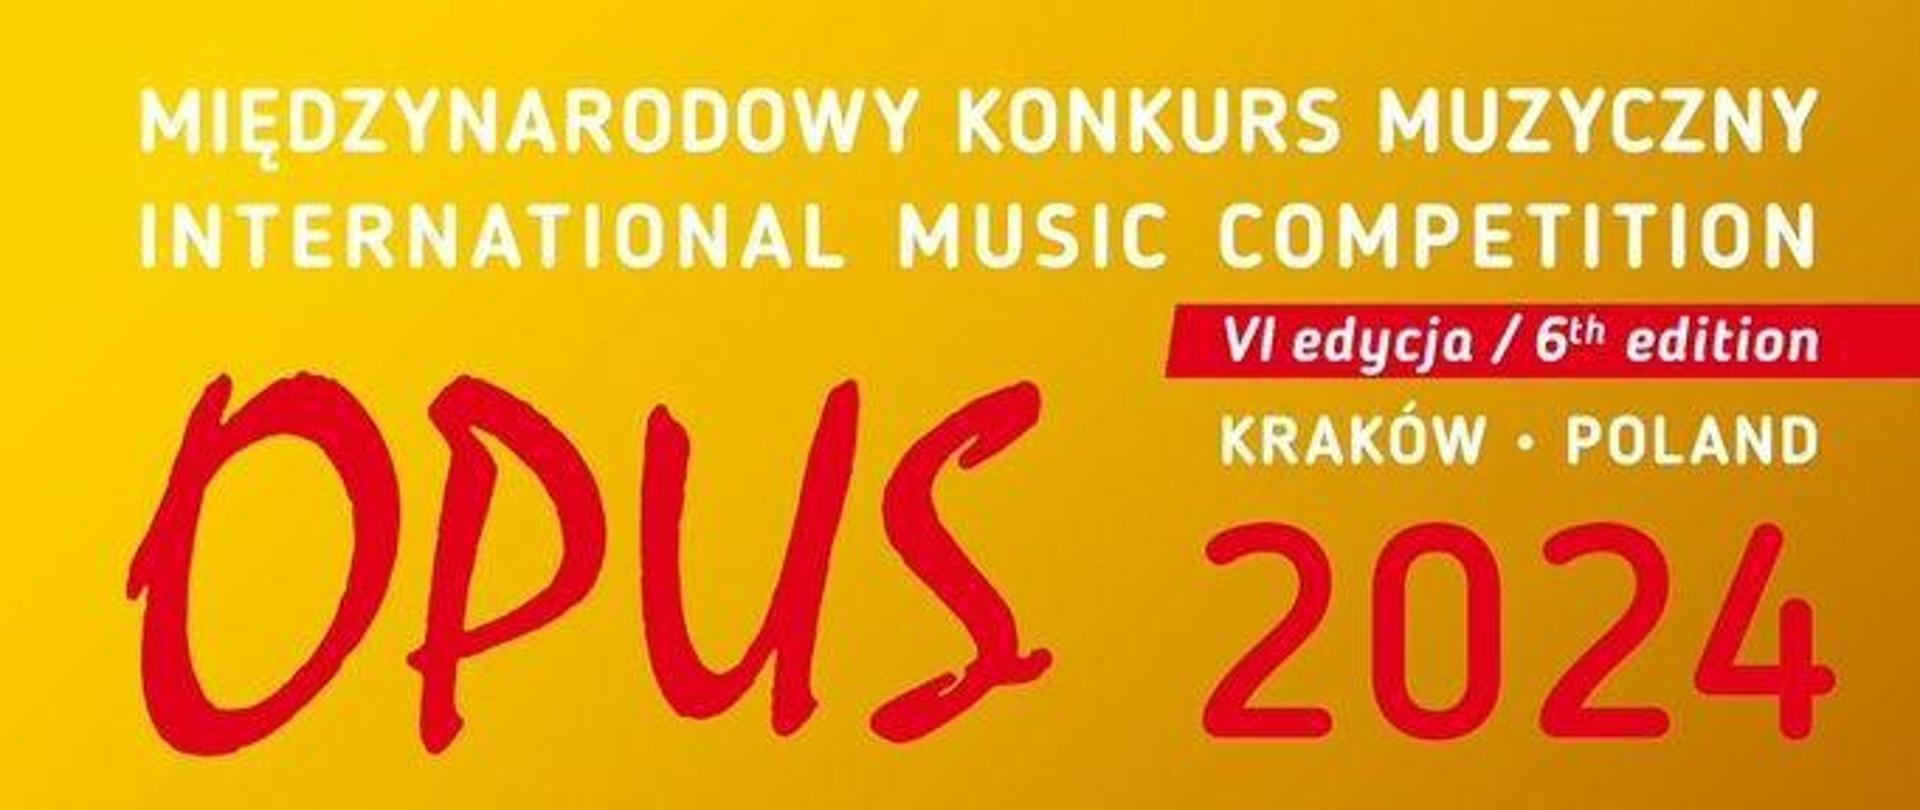 Międzynarodowy Konkurs Muzyczny "Opus" 2024